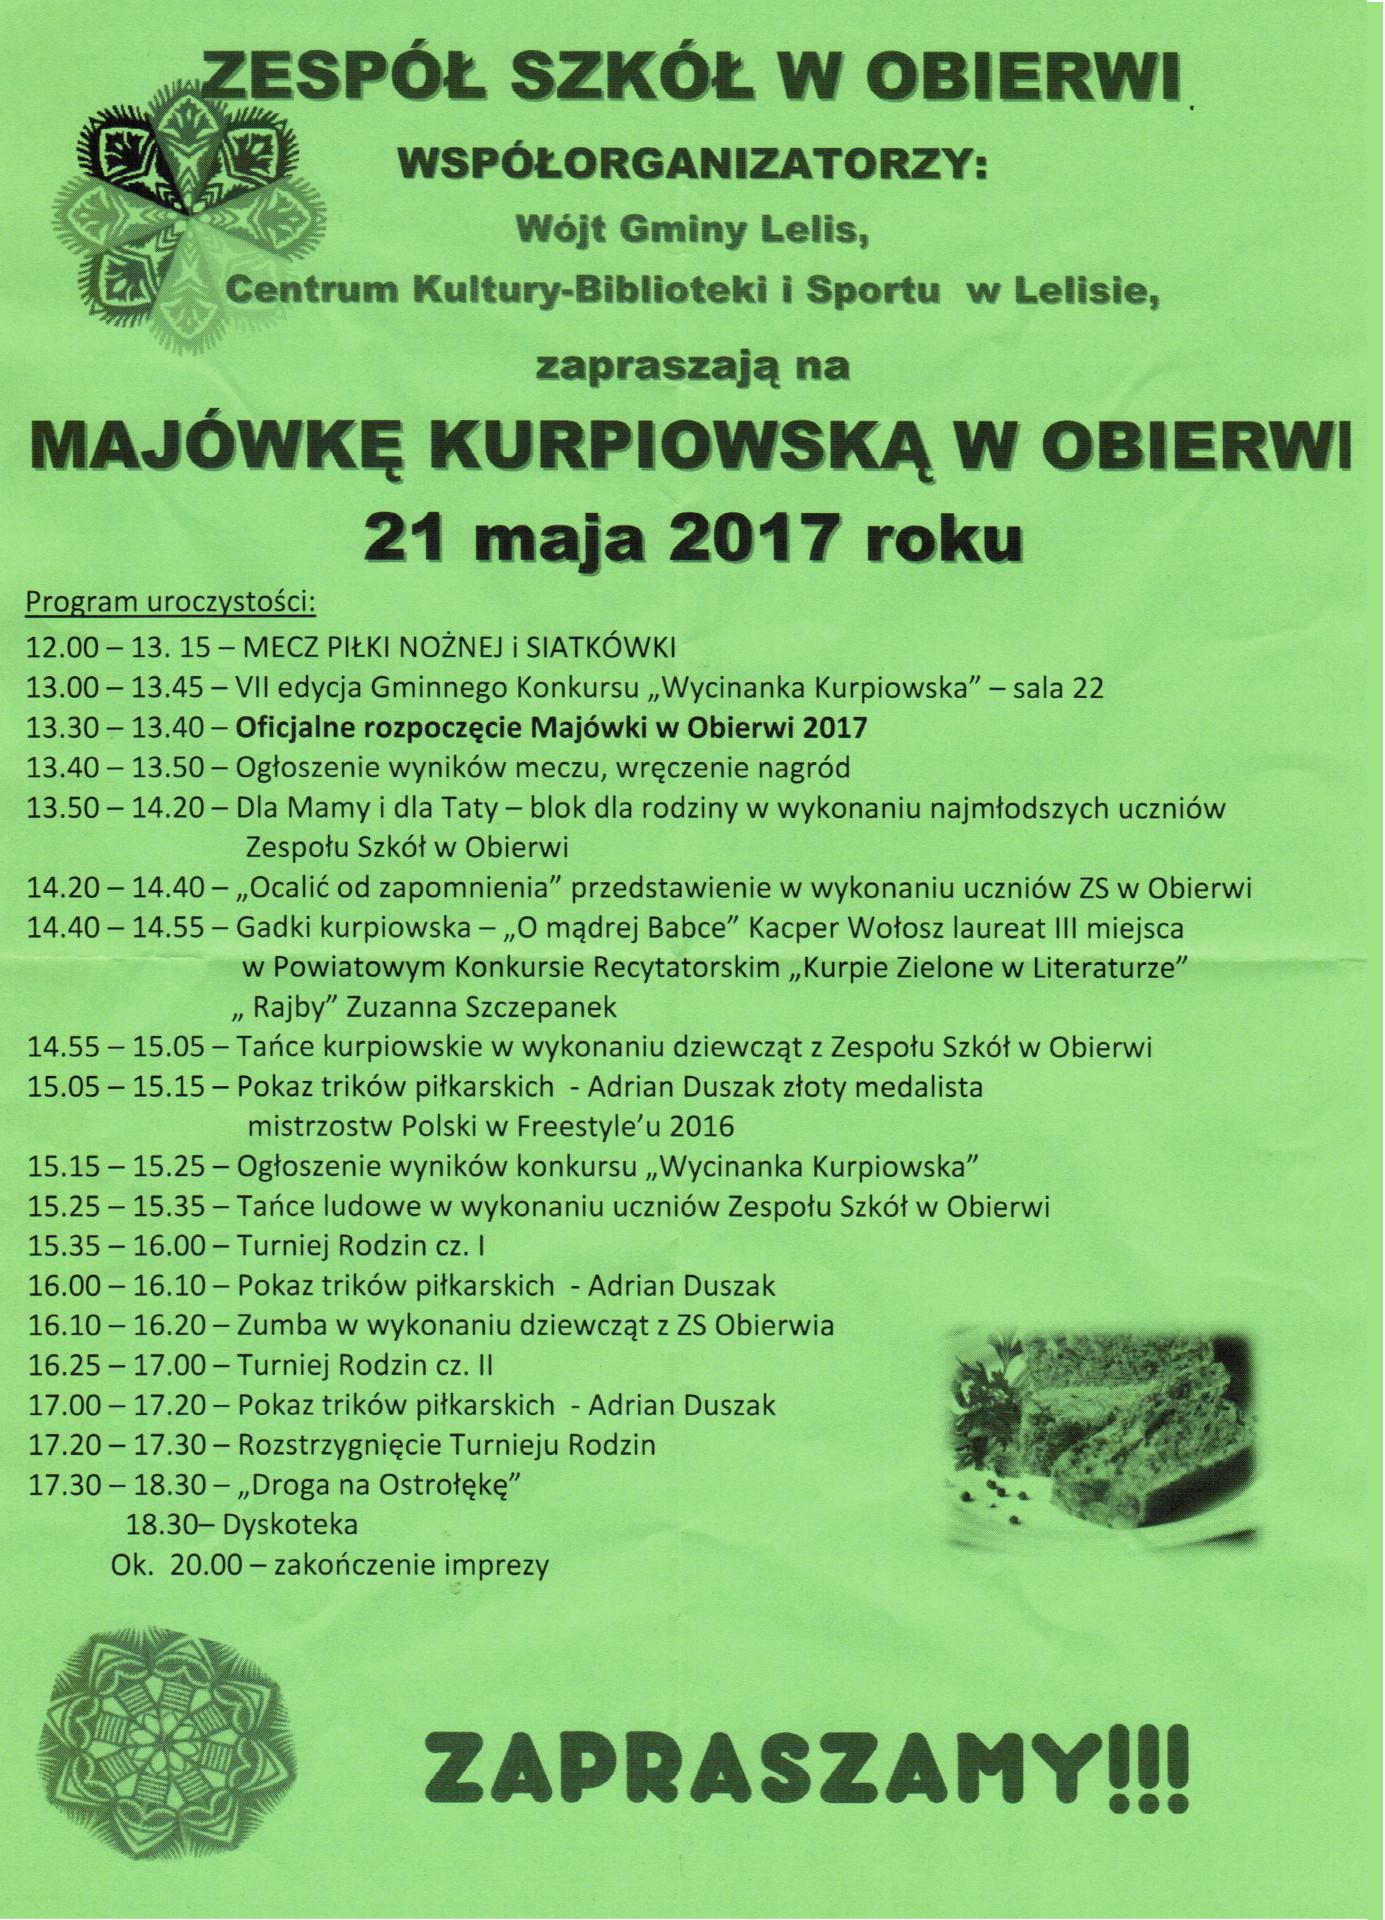 Majówka Kurpiowska w Obierwi 2017